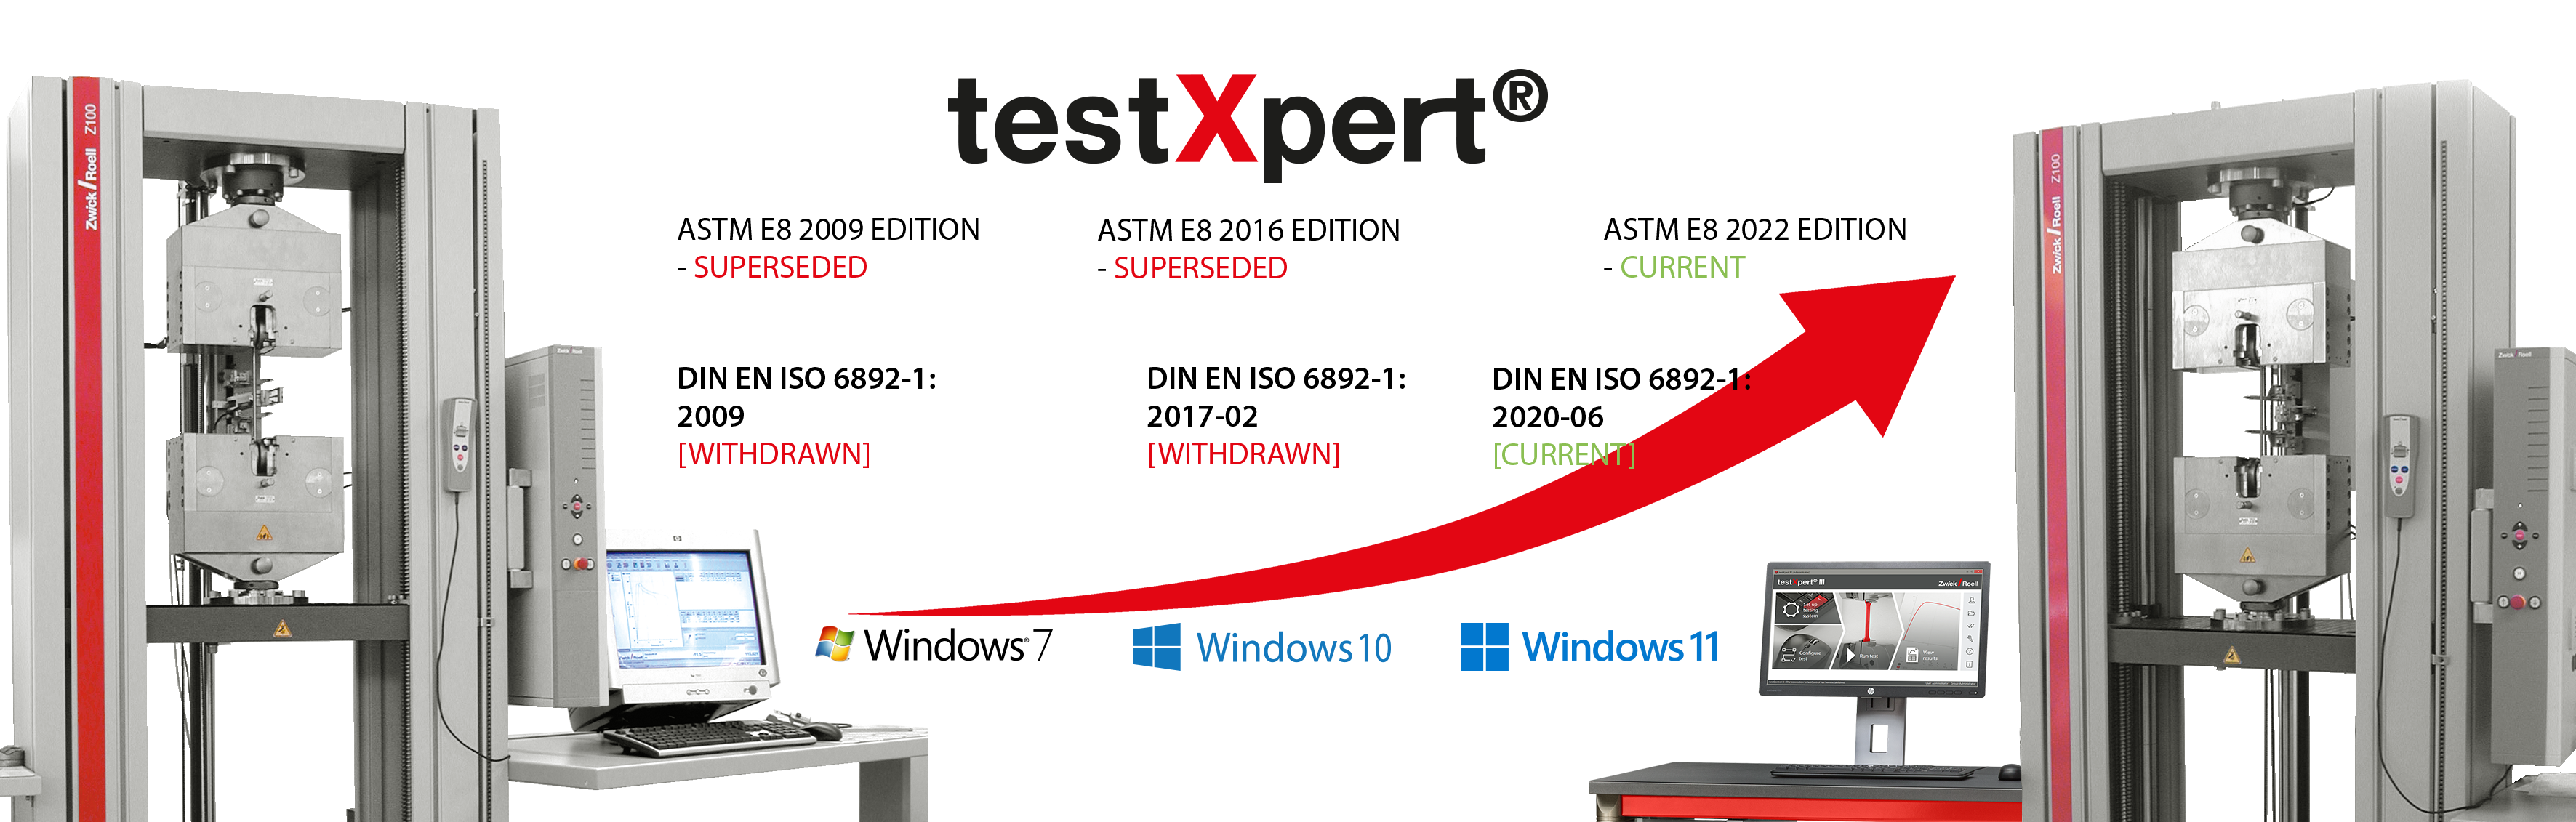 testXpert roste s vámi, ať už se mění standardy nebo se zavádí nový operační systém